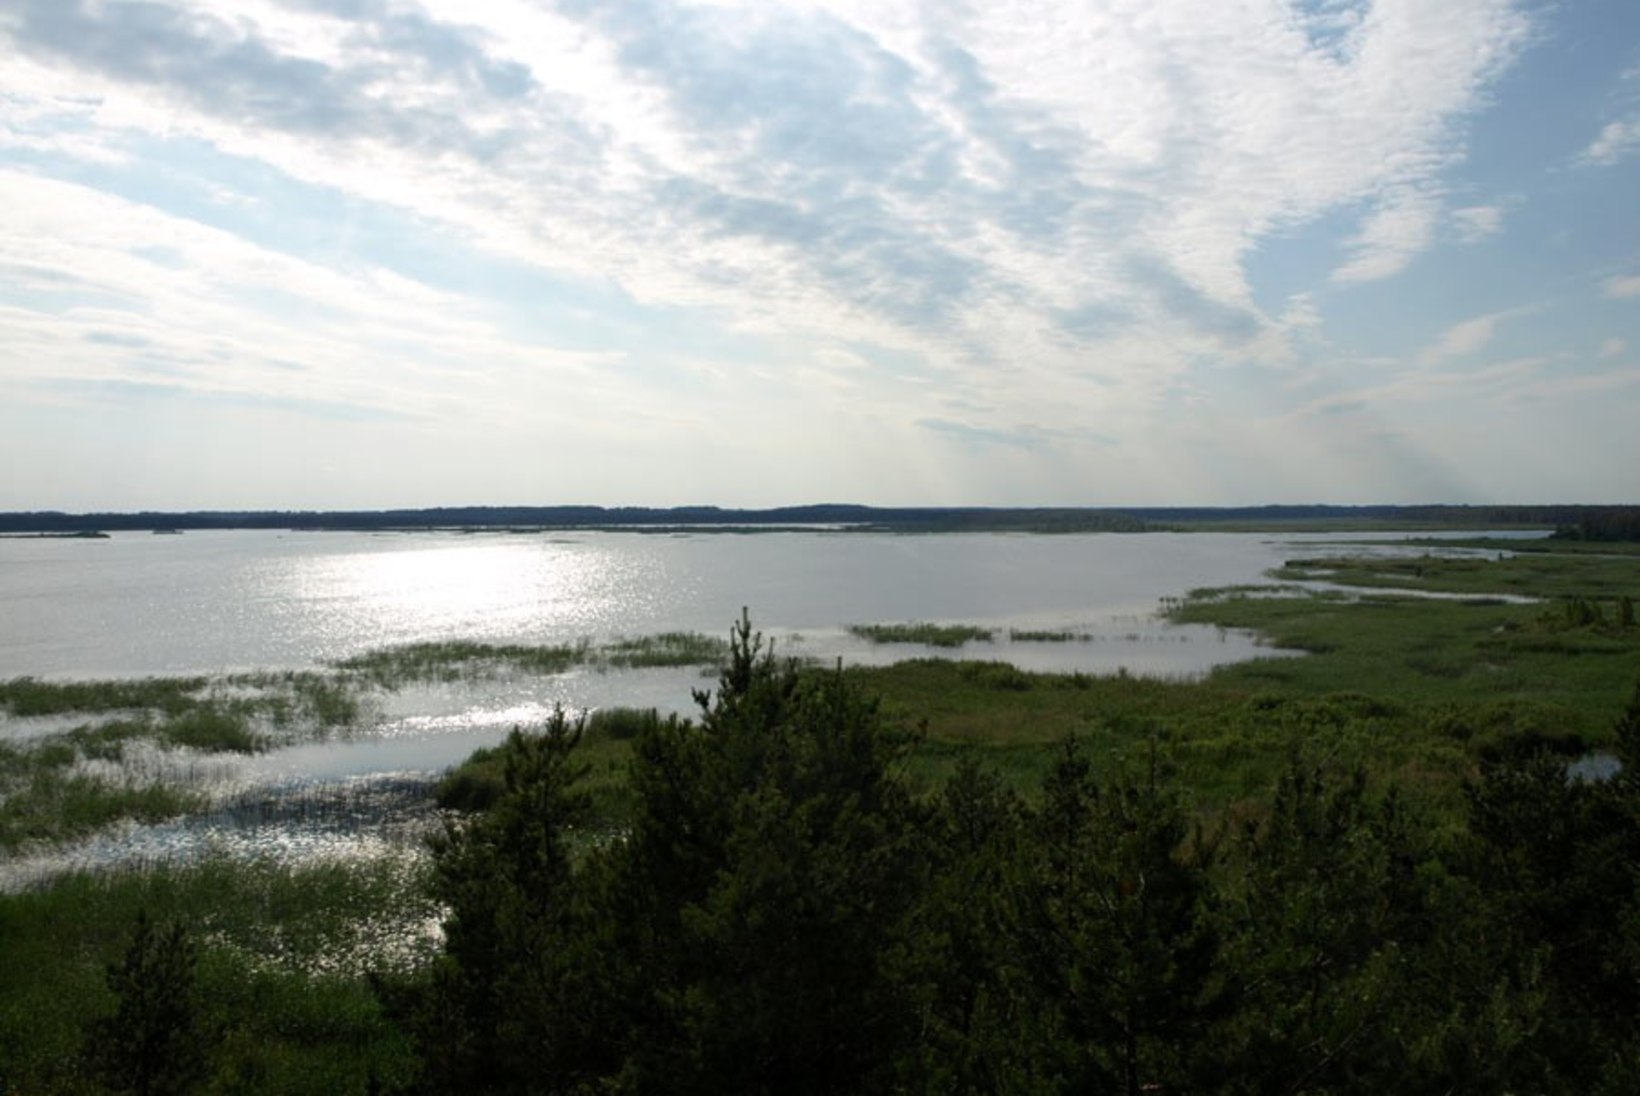 Tartu Ülikooli teadlane avastas, et maailmas on järvesid kolm korda vähem kui arvati